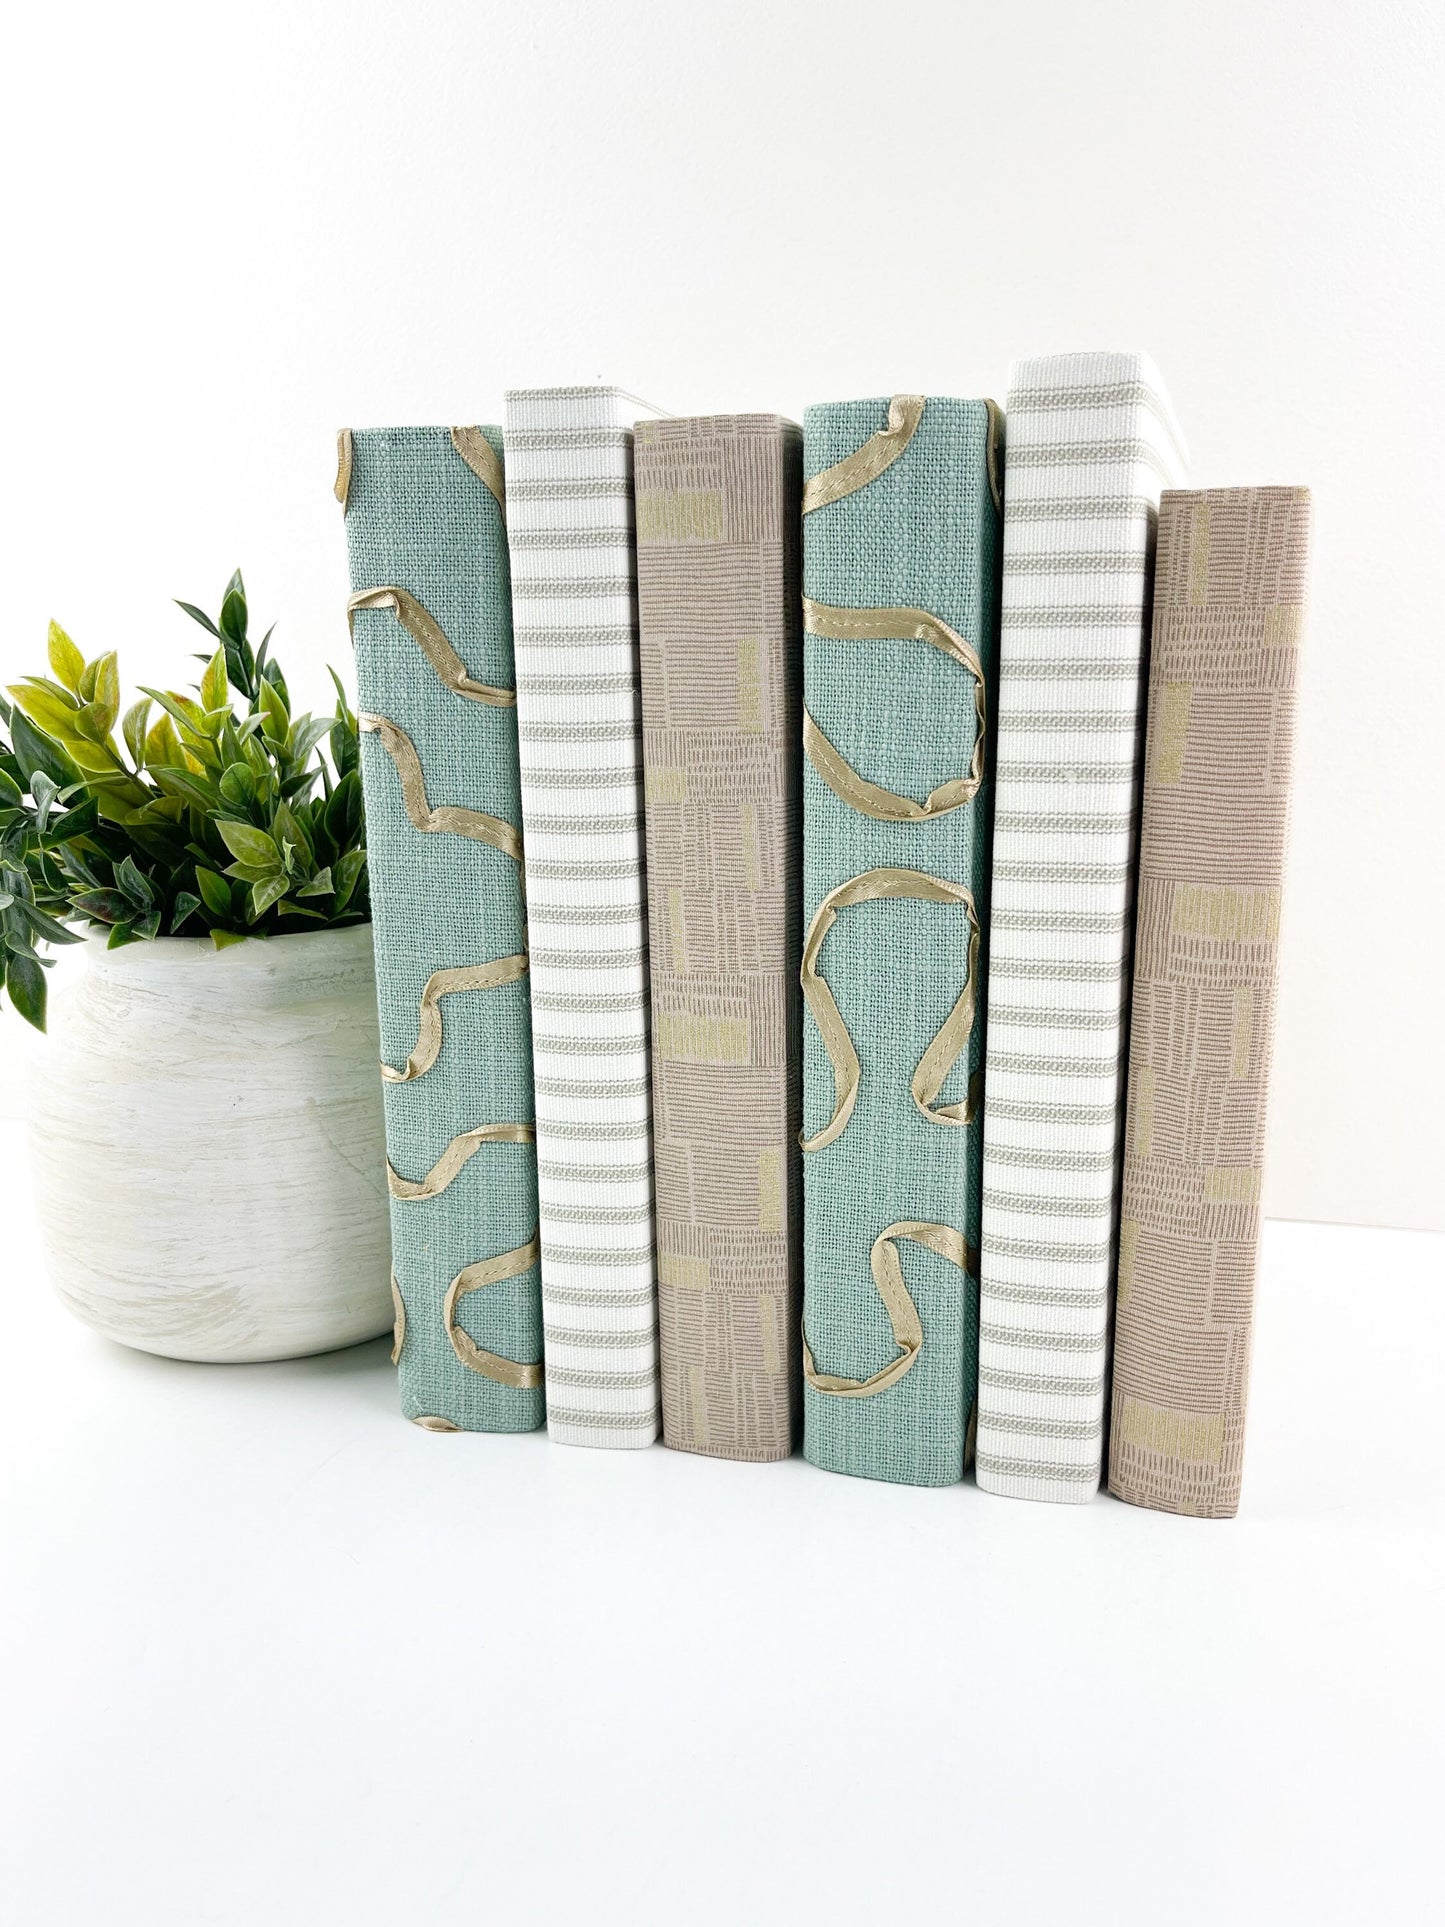 Green and Cream Decorative Books